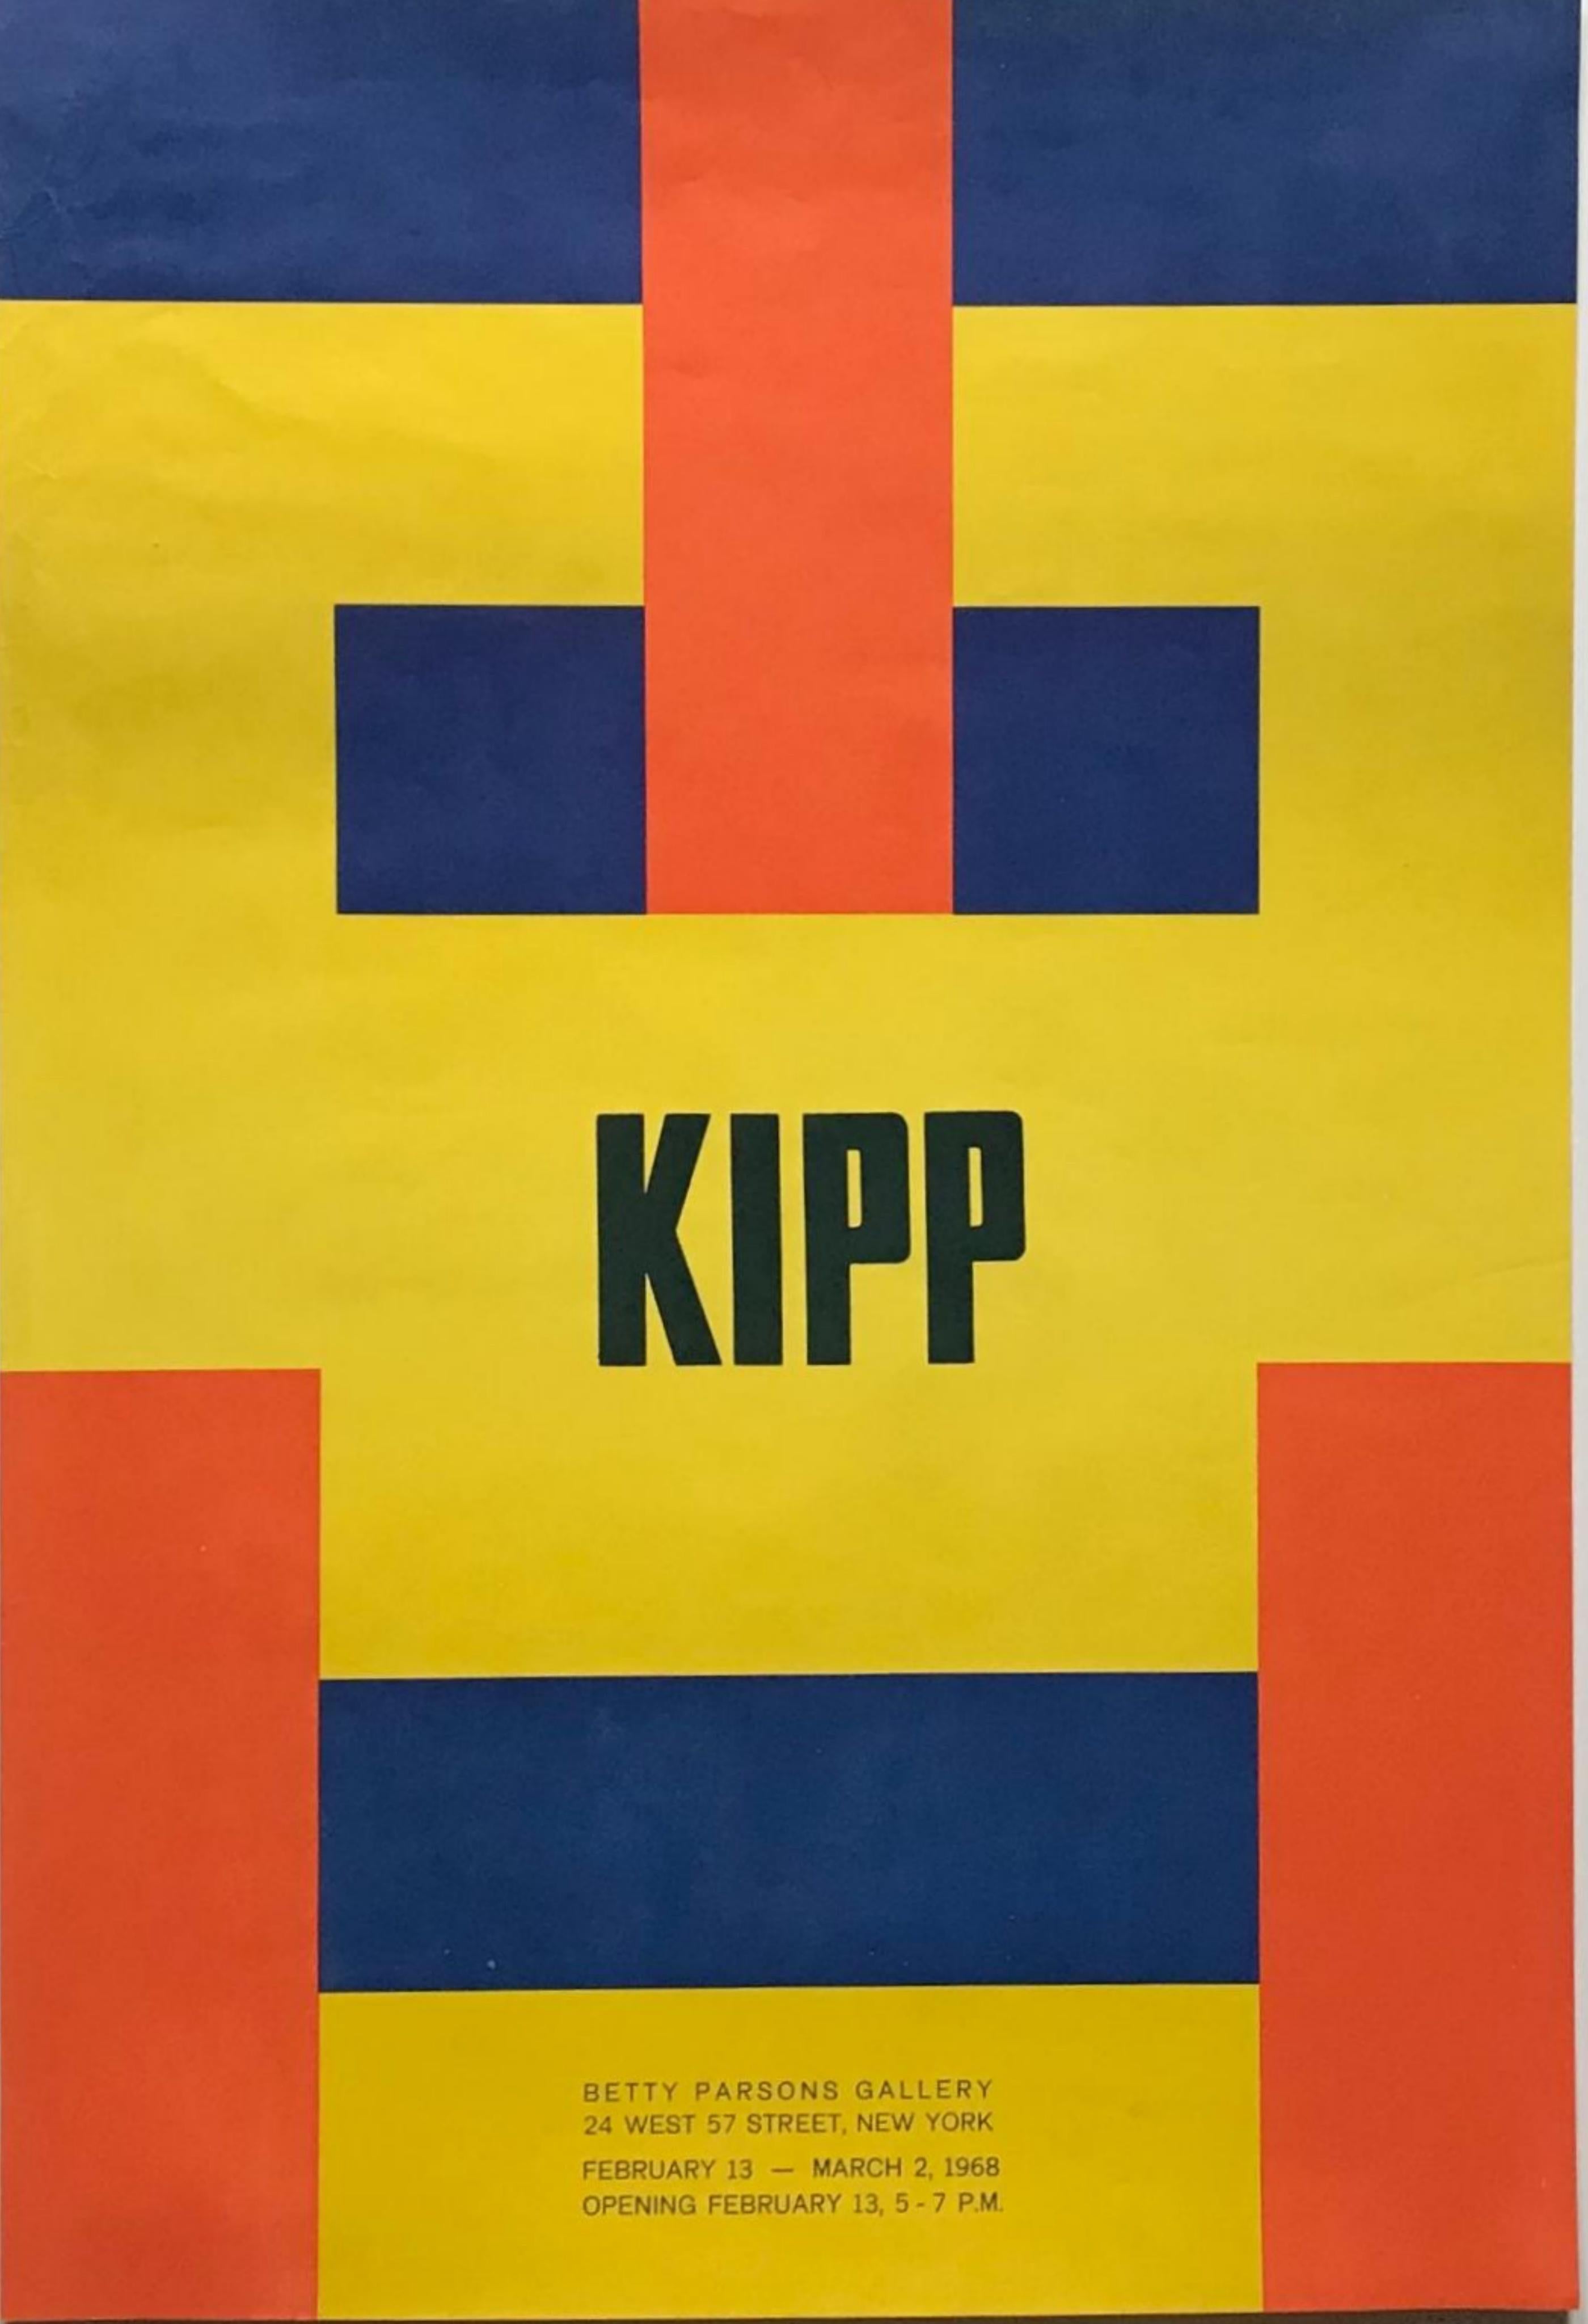 Affiche originale de la Betty Parsons Gallery (minimalisme, constructivisme)  - Art de Lyman Kipp 